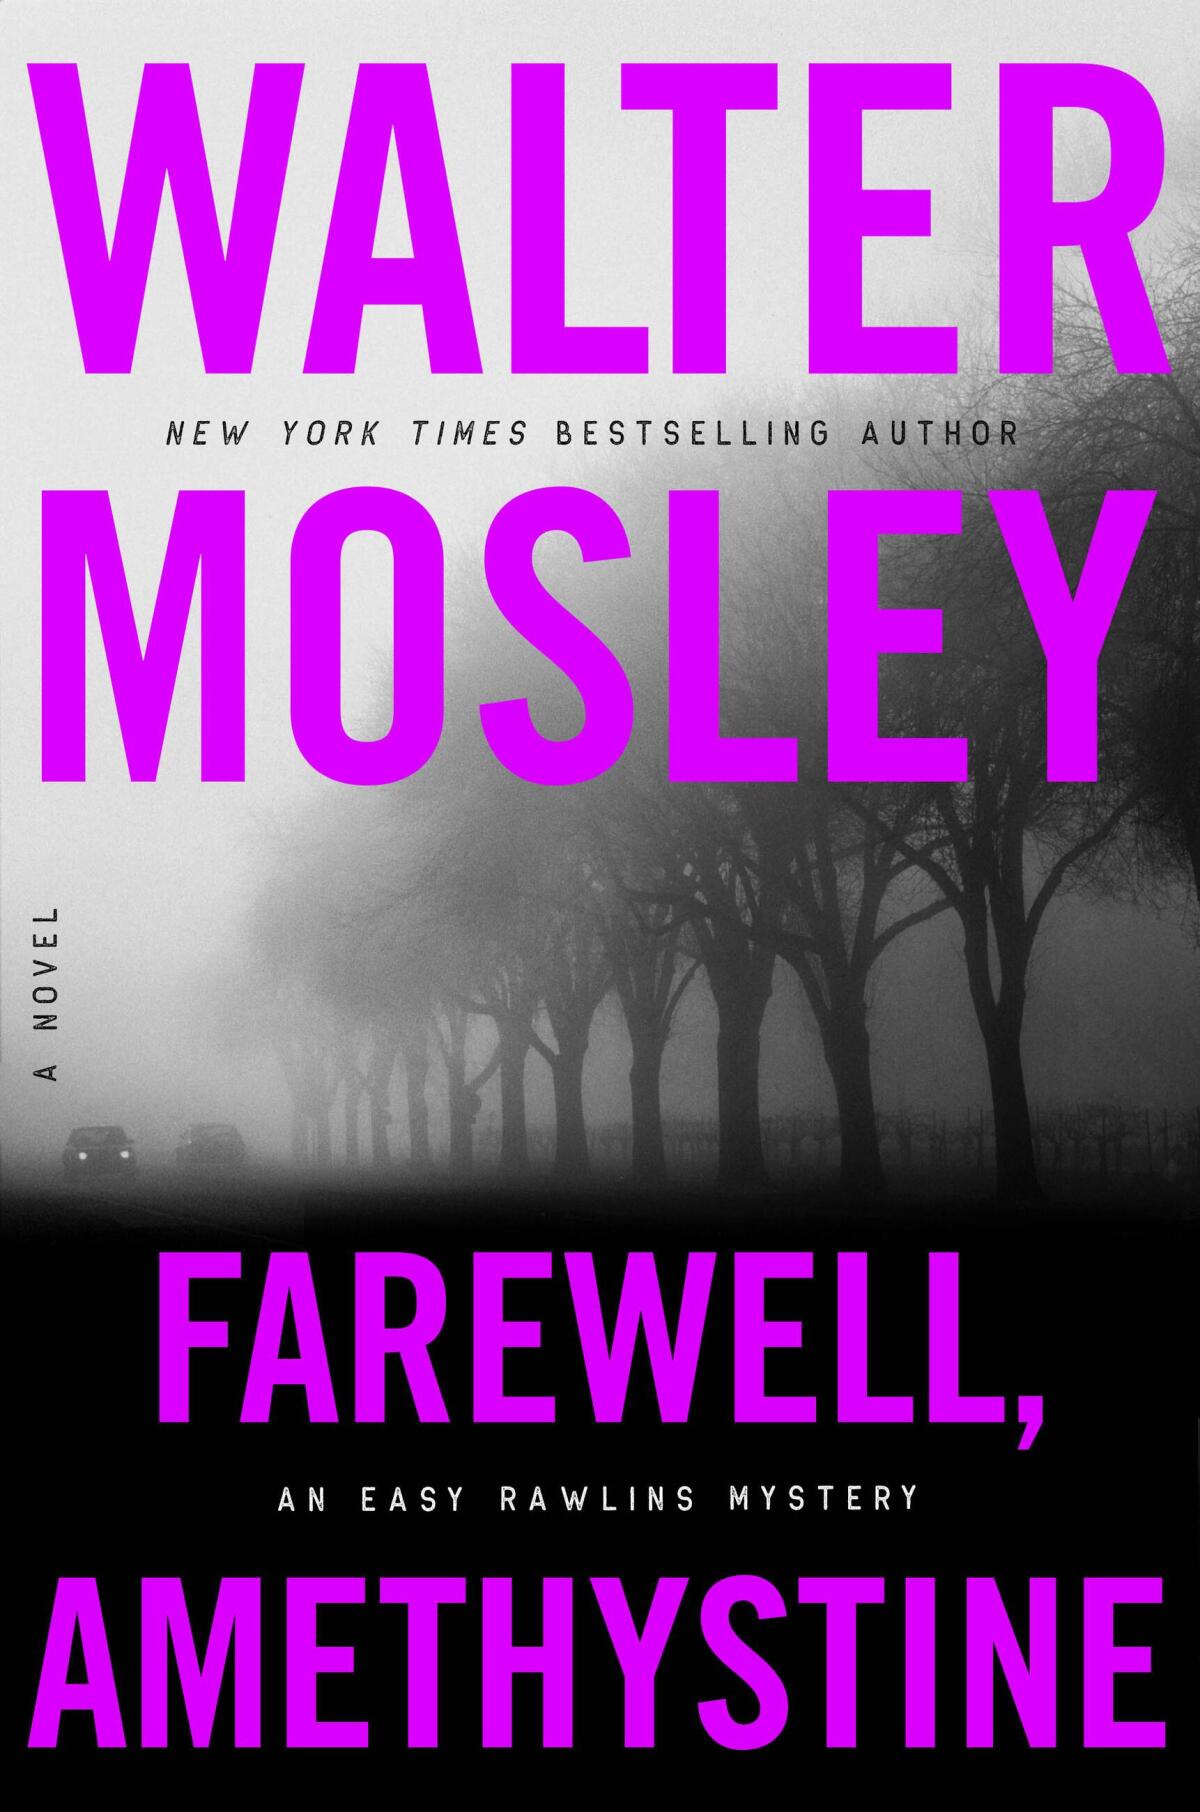 "Farewell, Amethystine" by Walter Mosley